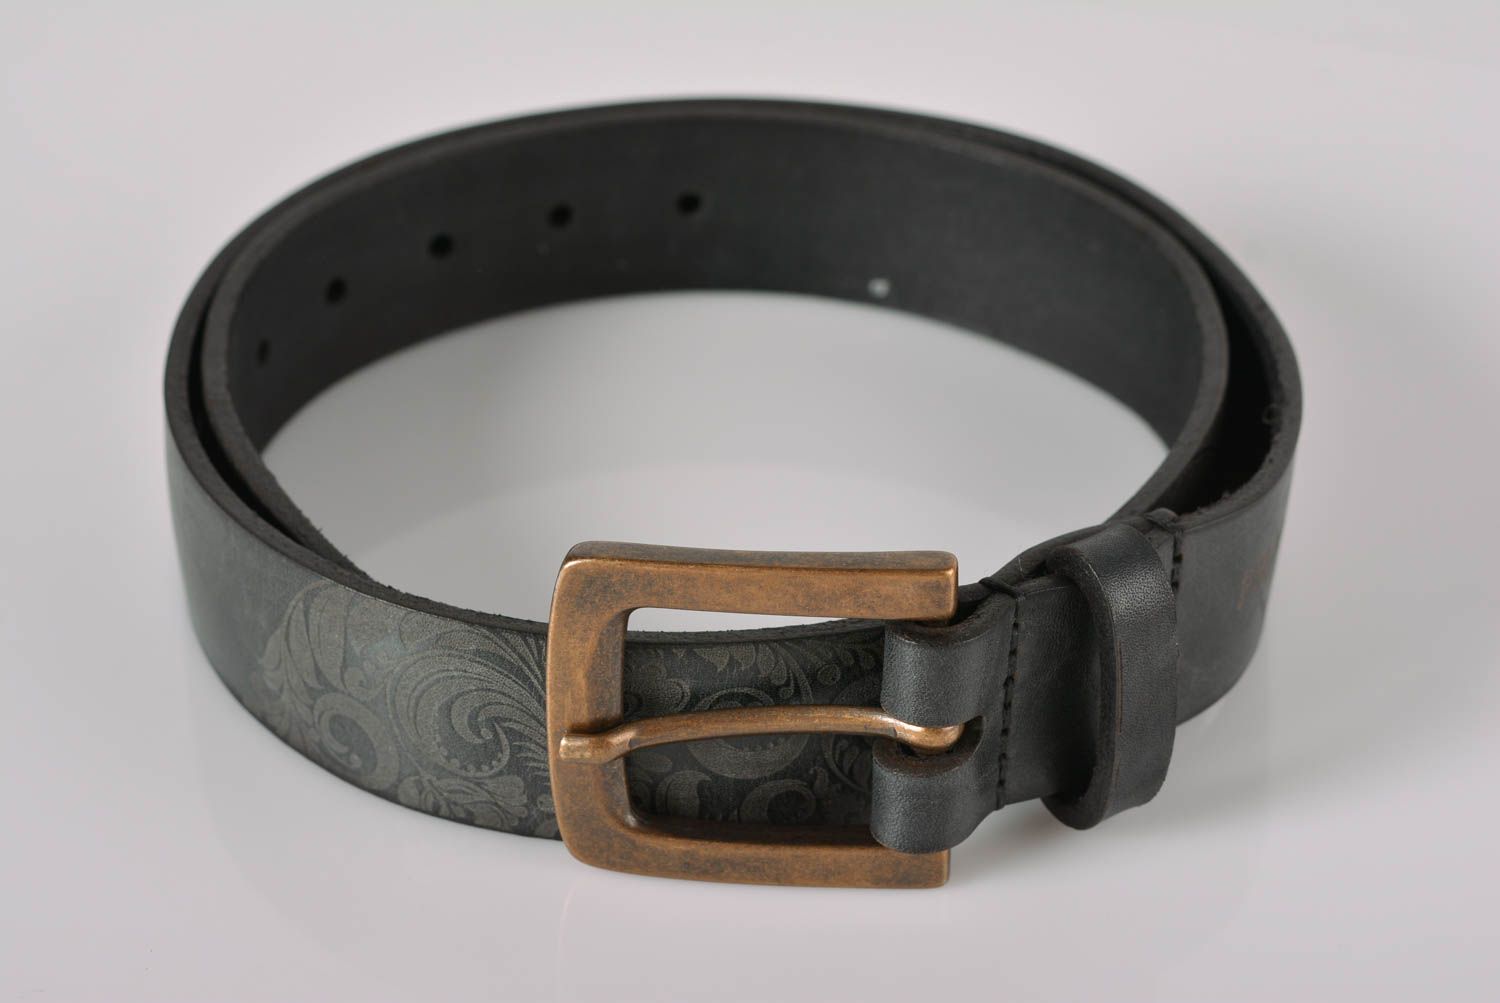 Mens leather belt handmade men belt designer men belts gifts ideas for men photo 1